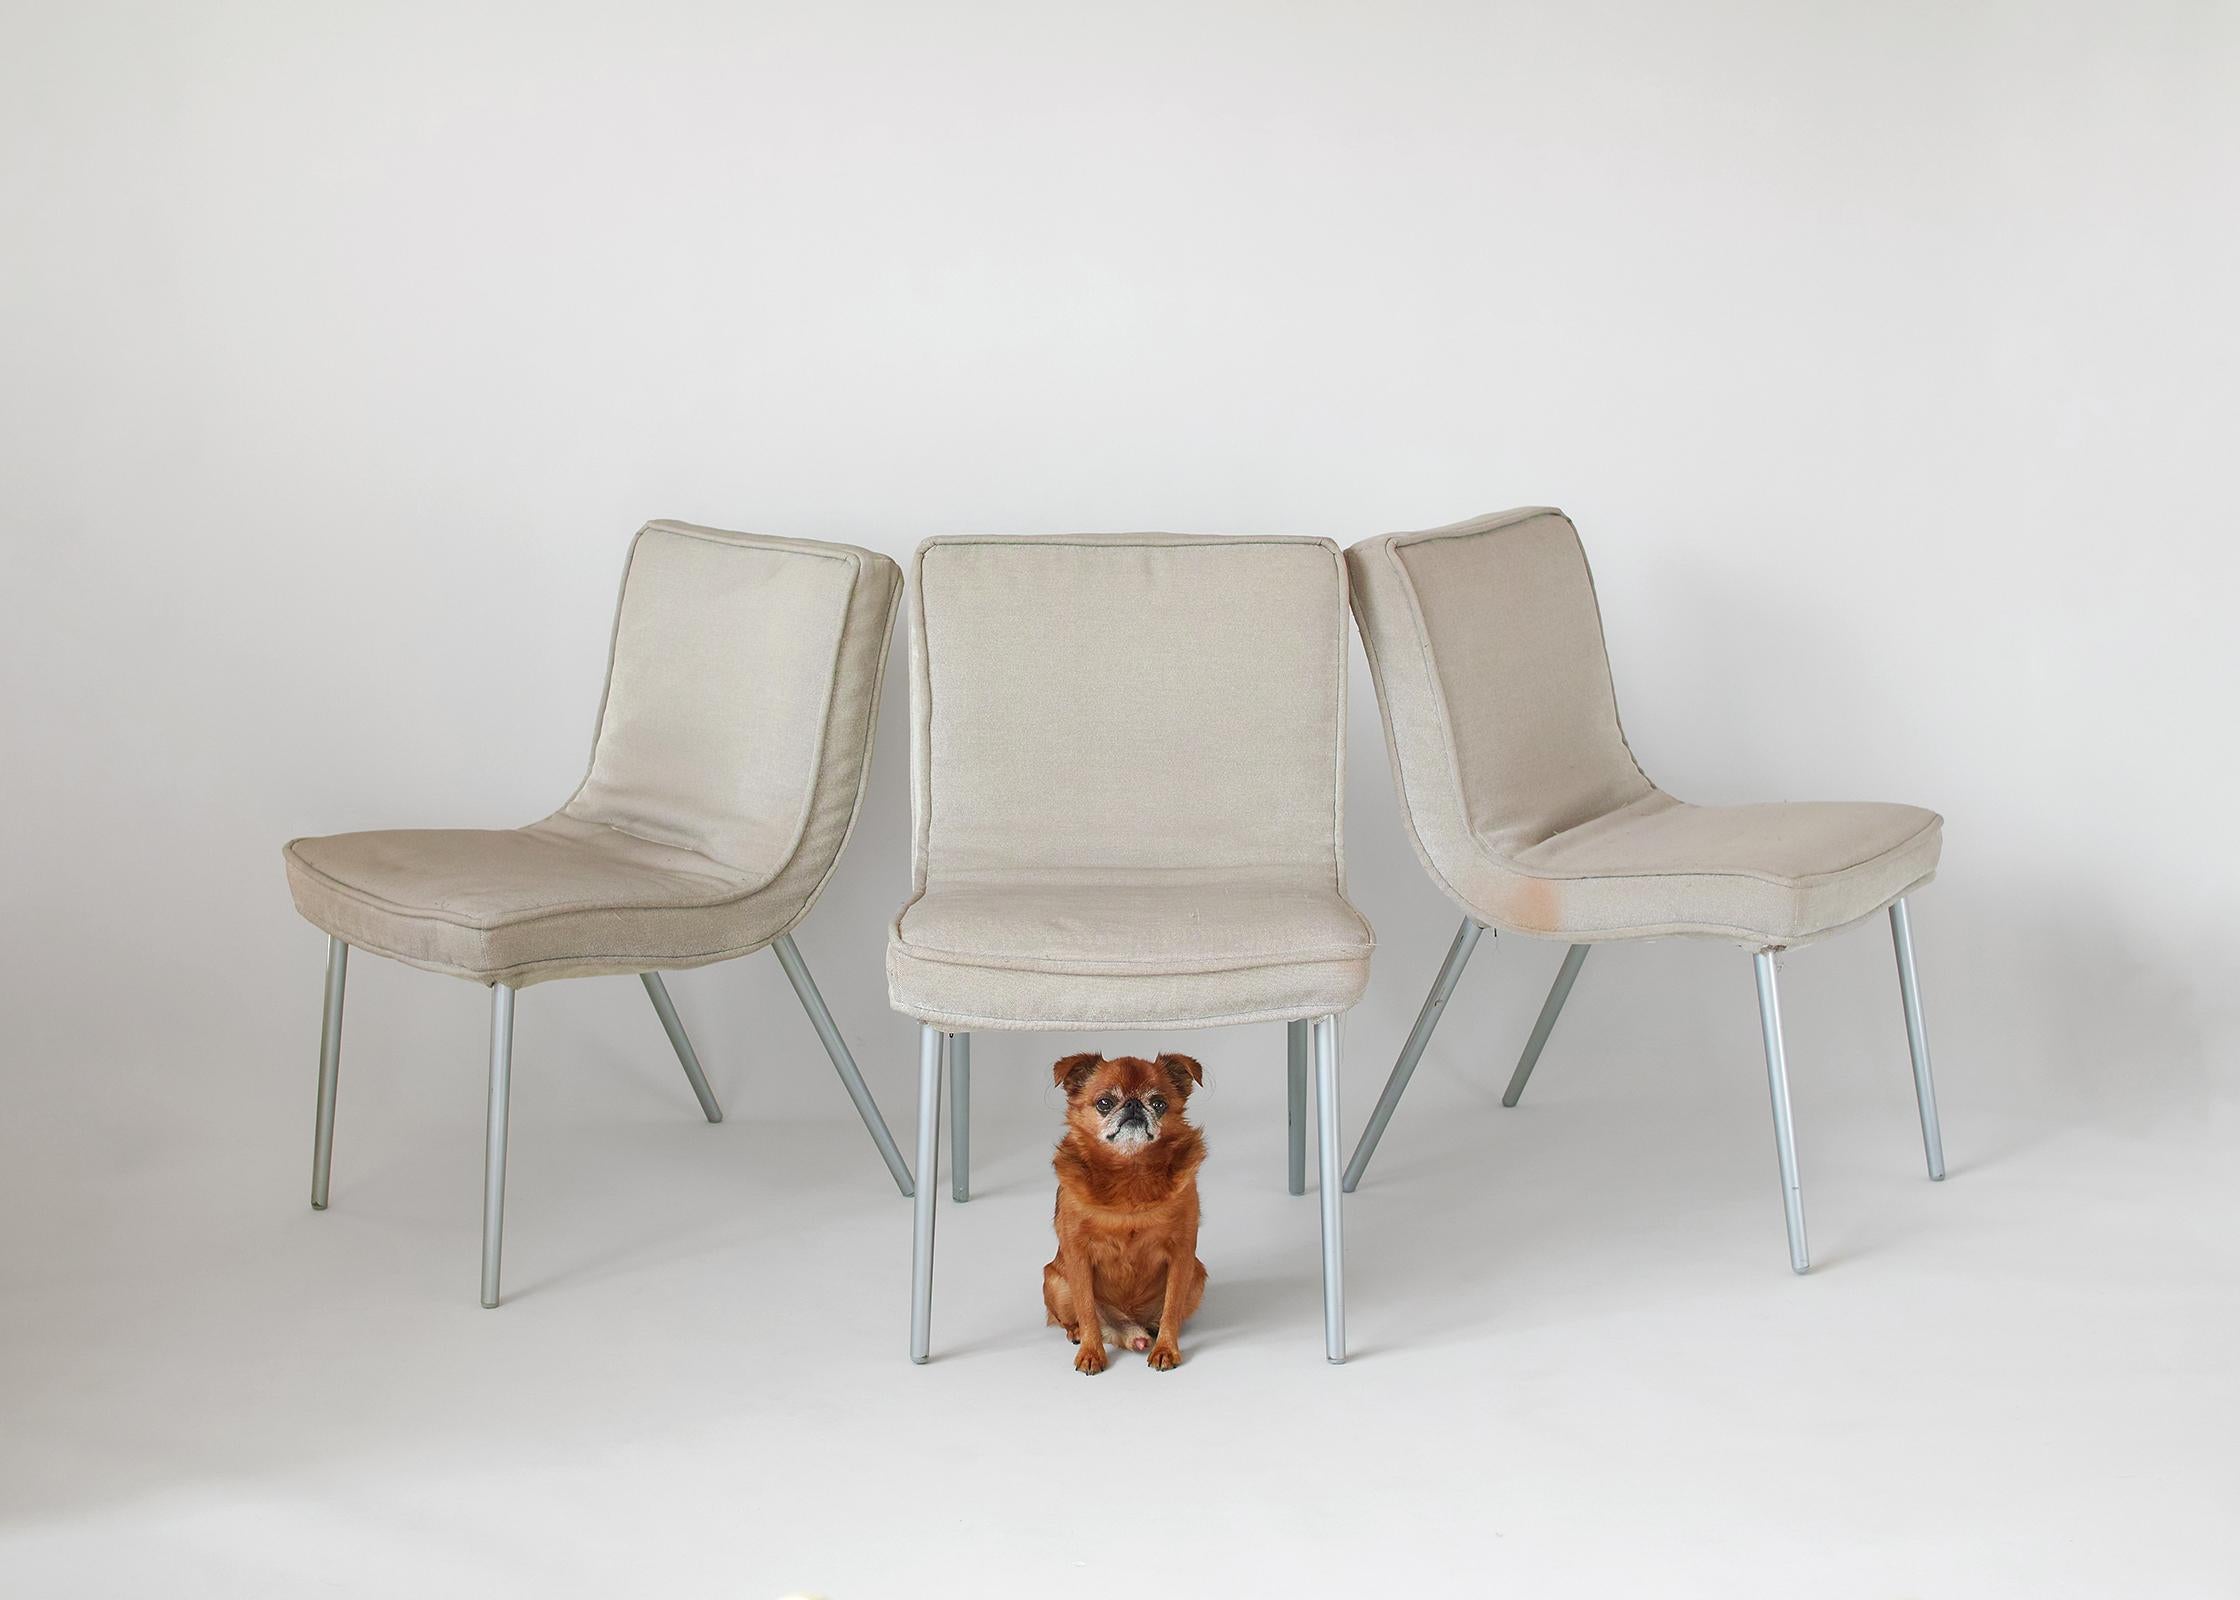 Wir bieten Ihnen diese drei originalen französischen modernen Esszimmerstühle von Ligne Roset, die Christian Werner zugeschrieben werden. Die robusten und bequemen Sessel haben eine Schalenform mit origineller grauer Polsterung und Beine aus